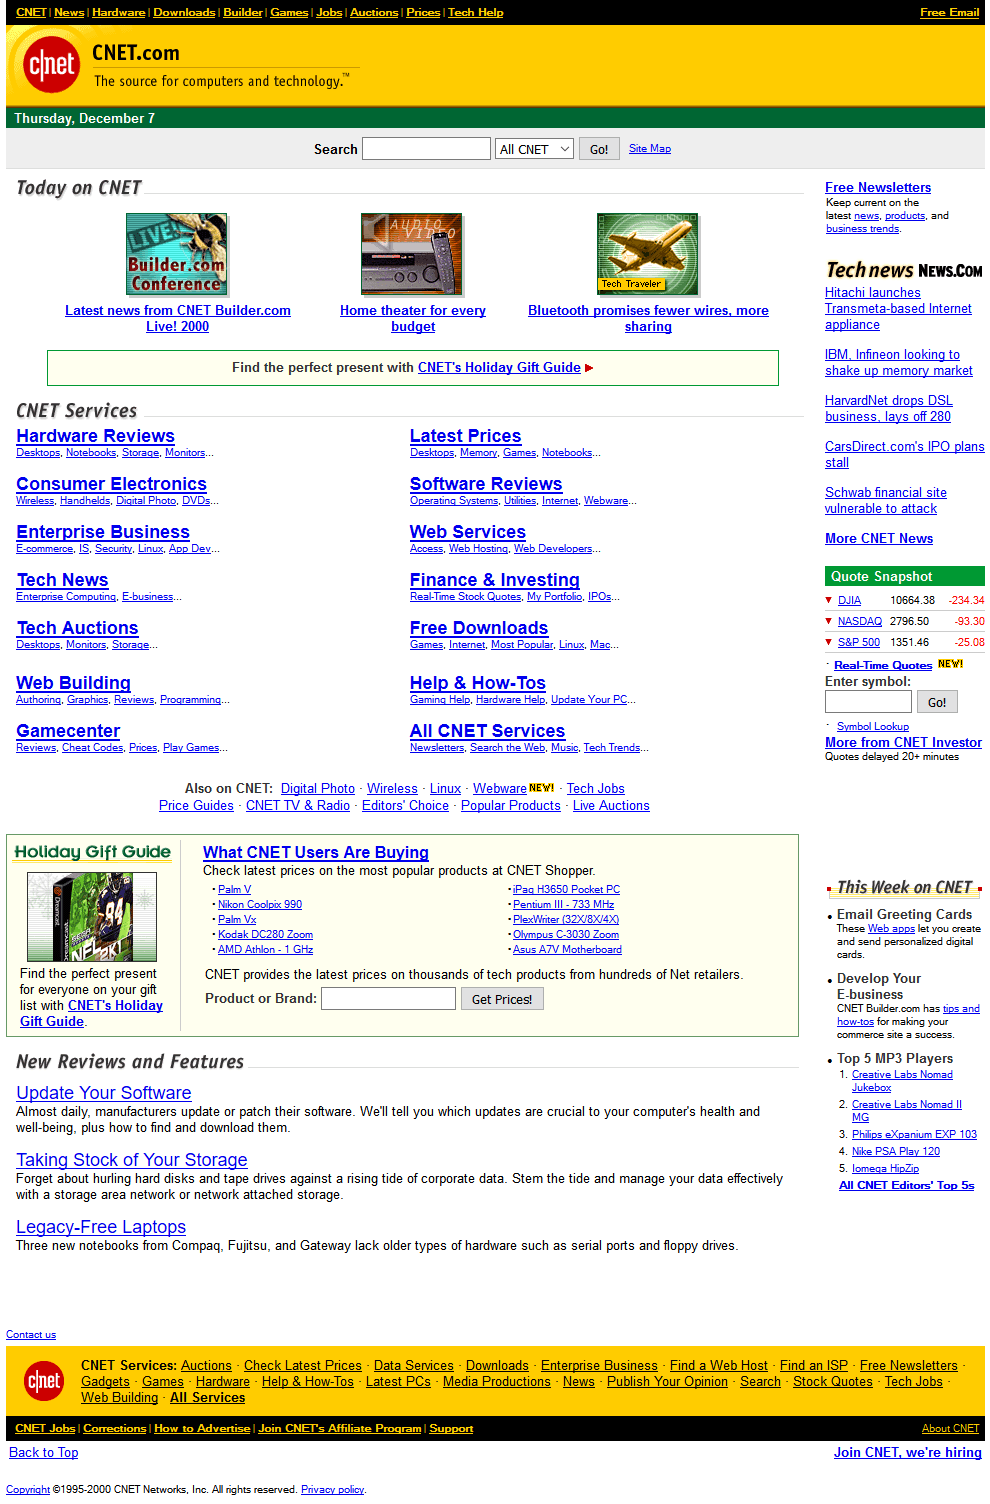 CNET in 2000